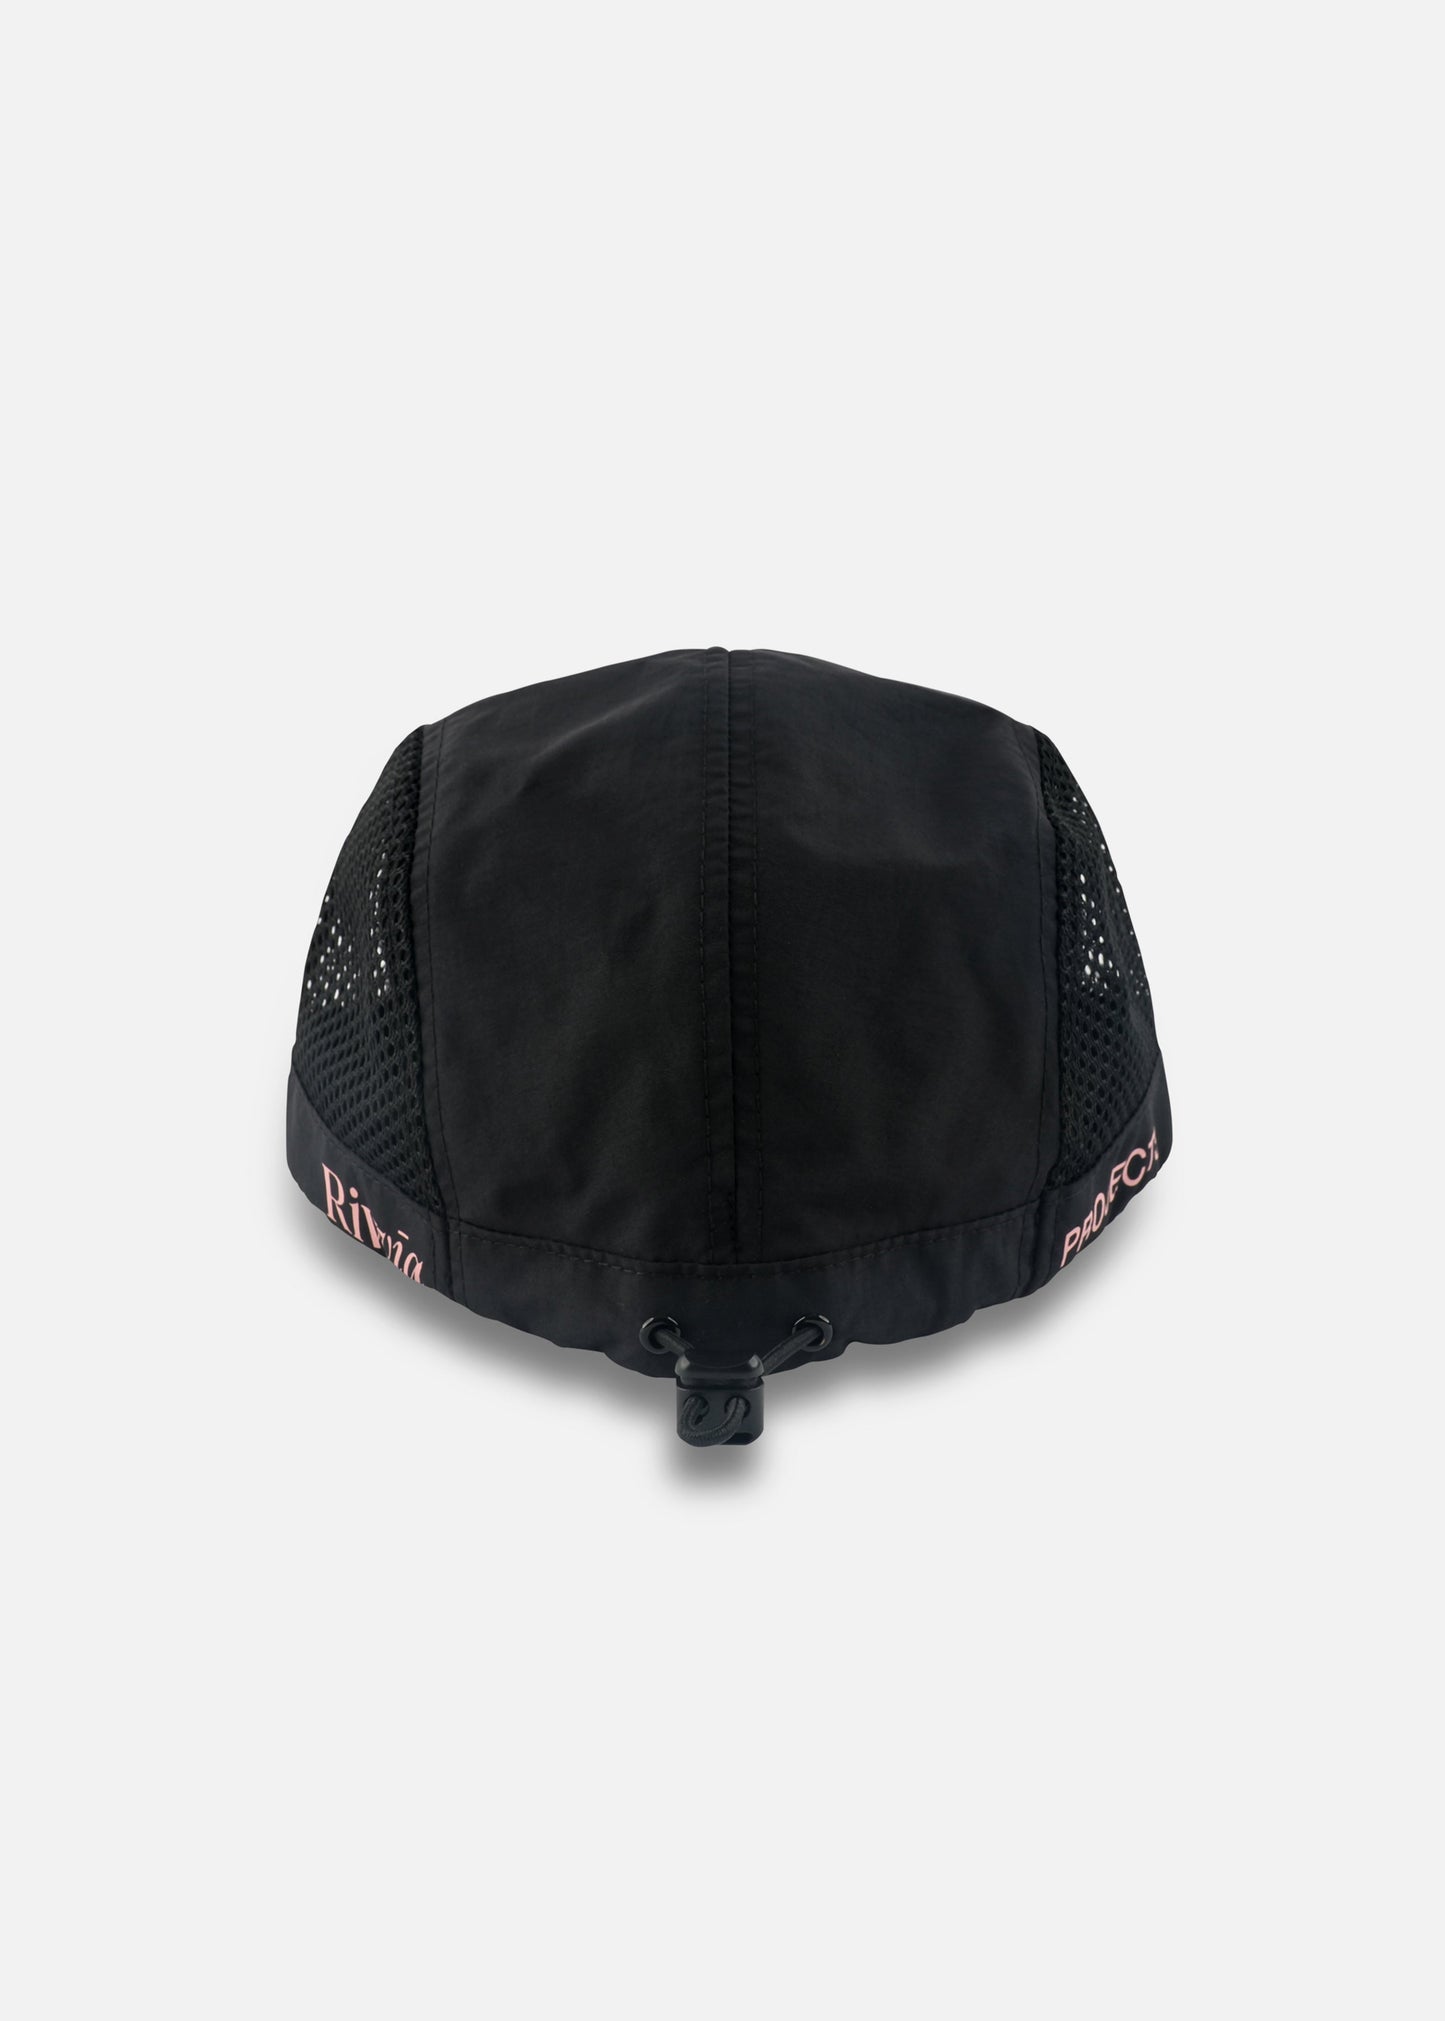 ELEMENTS CAP : BLACK